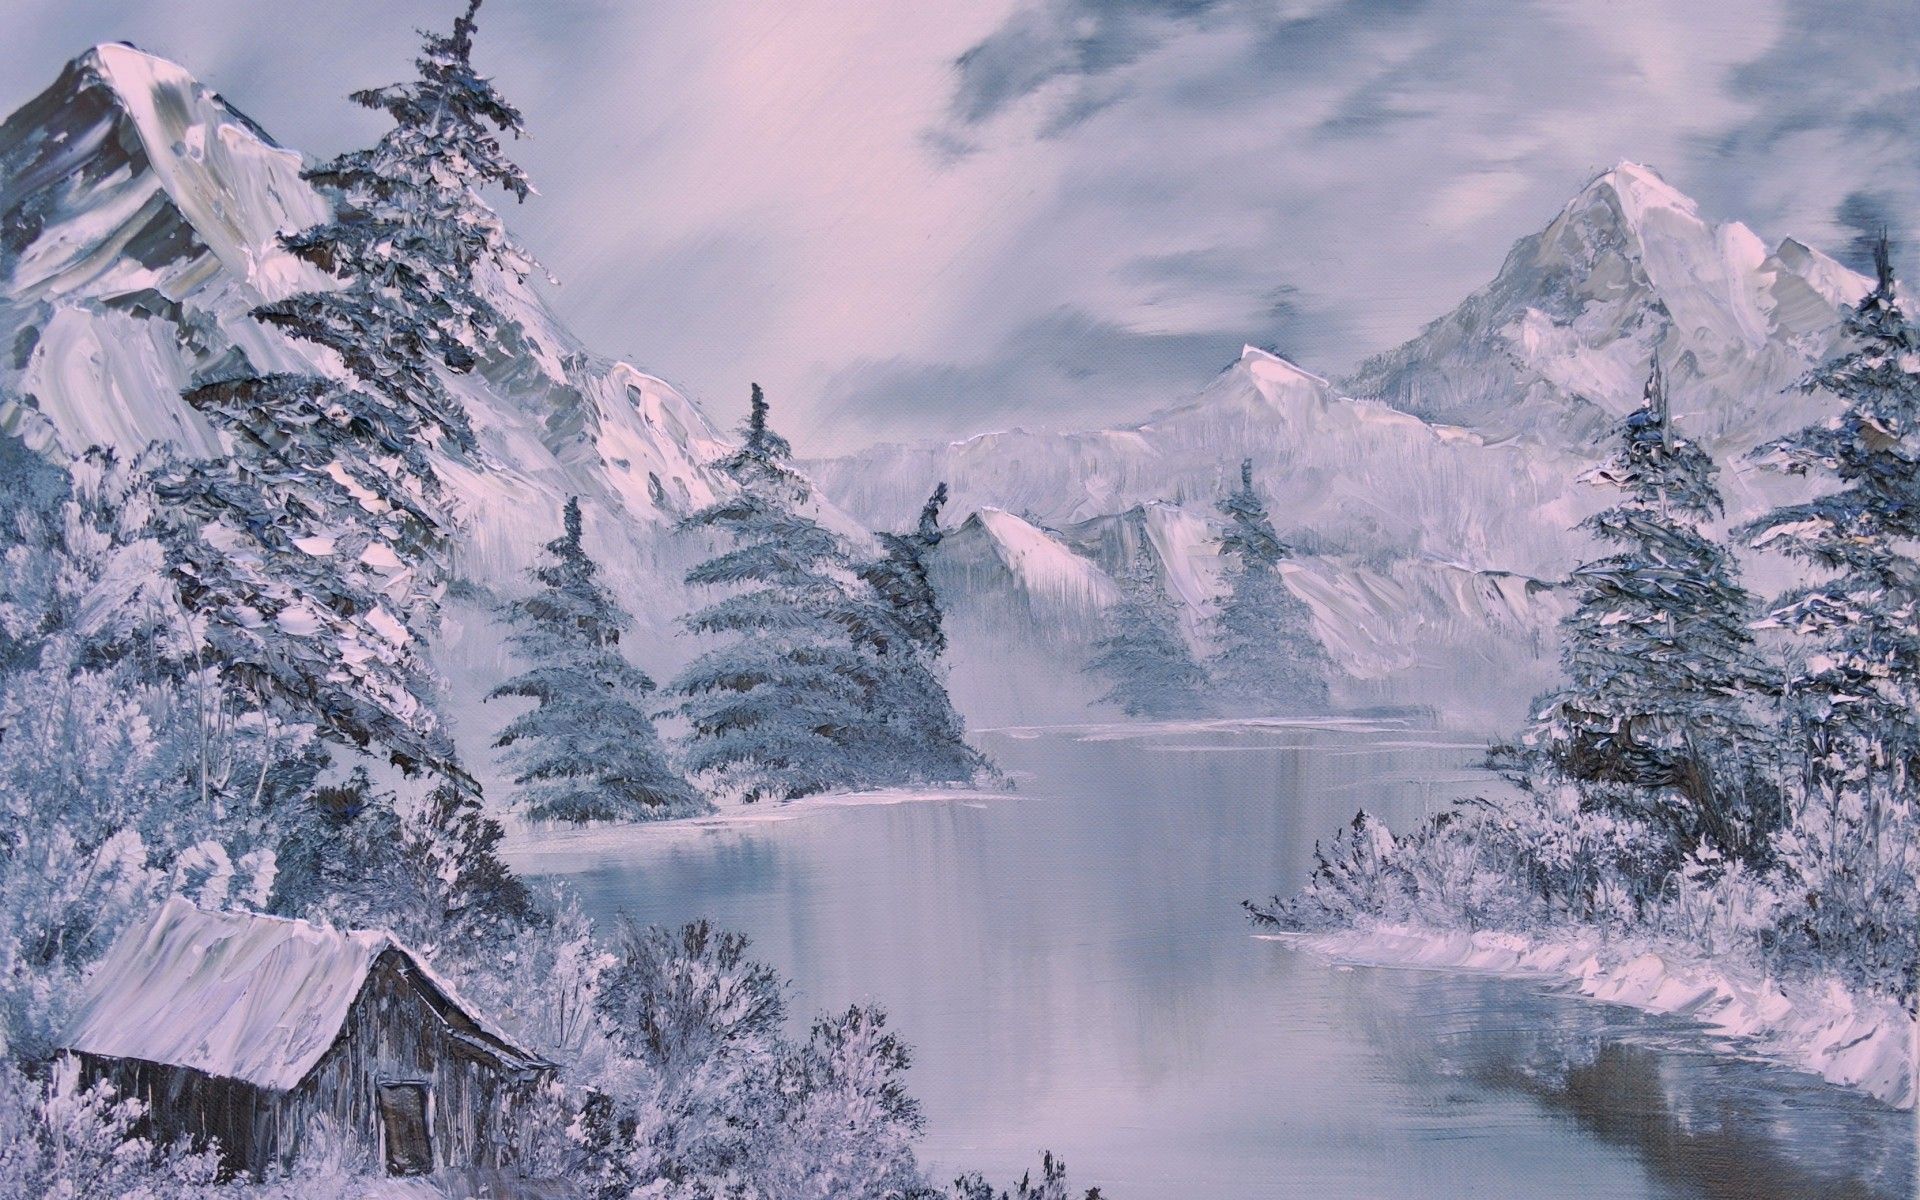 Winter Scenes Wallpaper